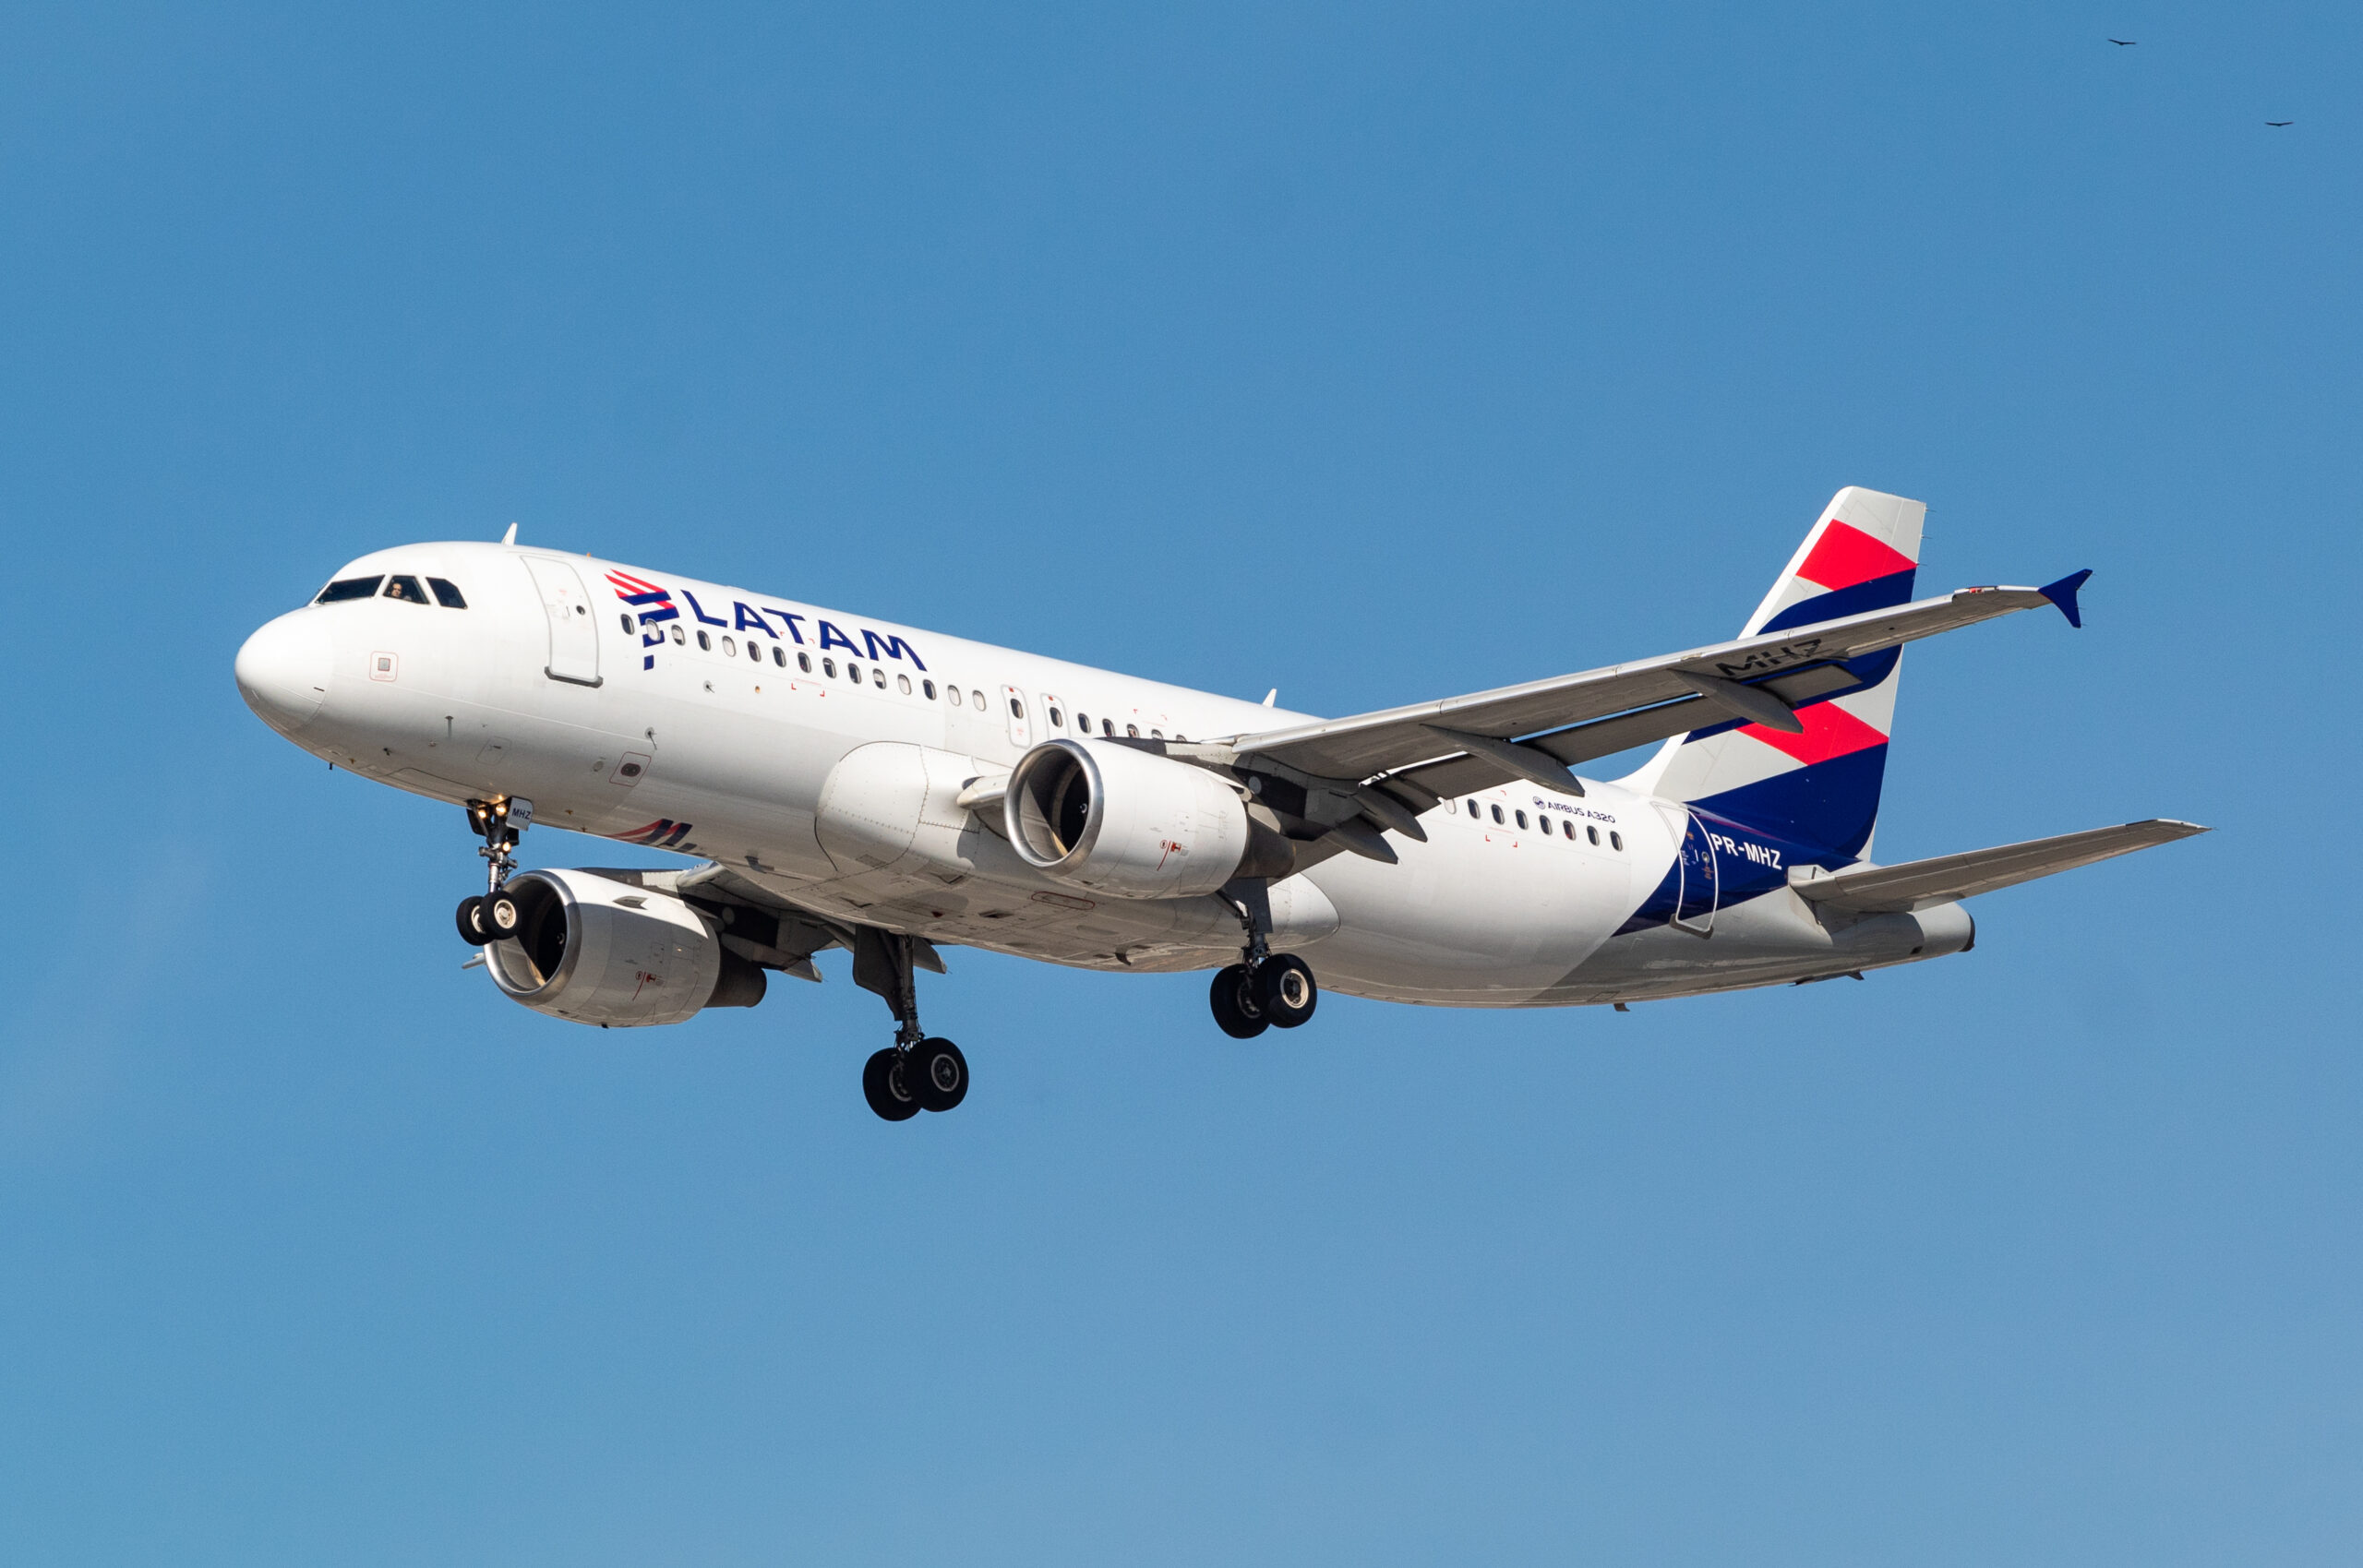 PR-MHZ – Airbus A320-214 – LATAM Airlines